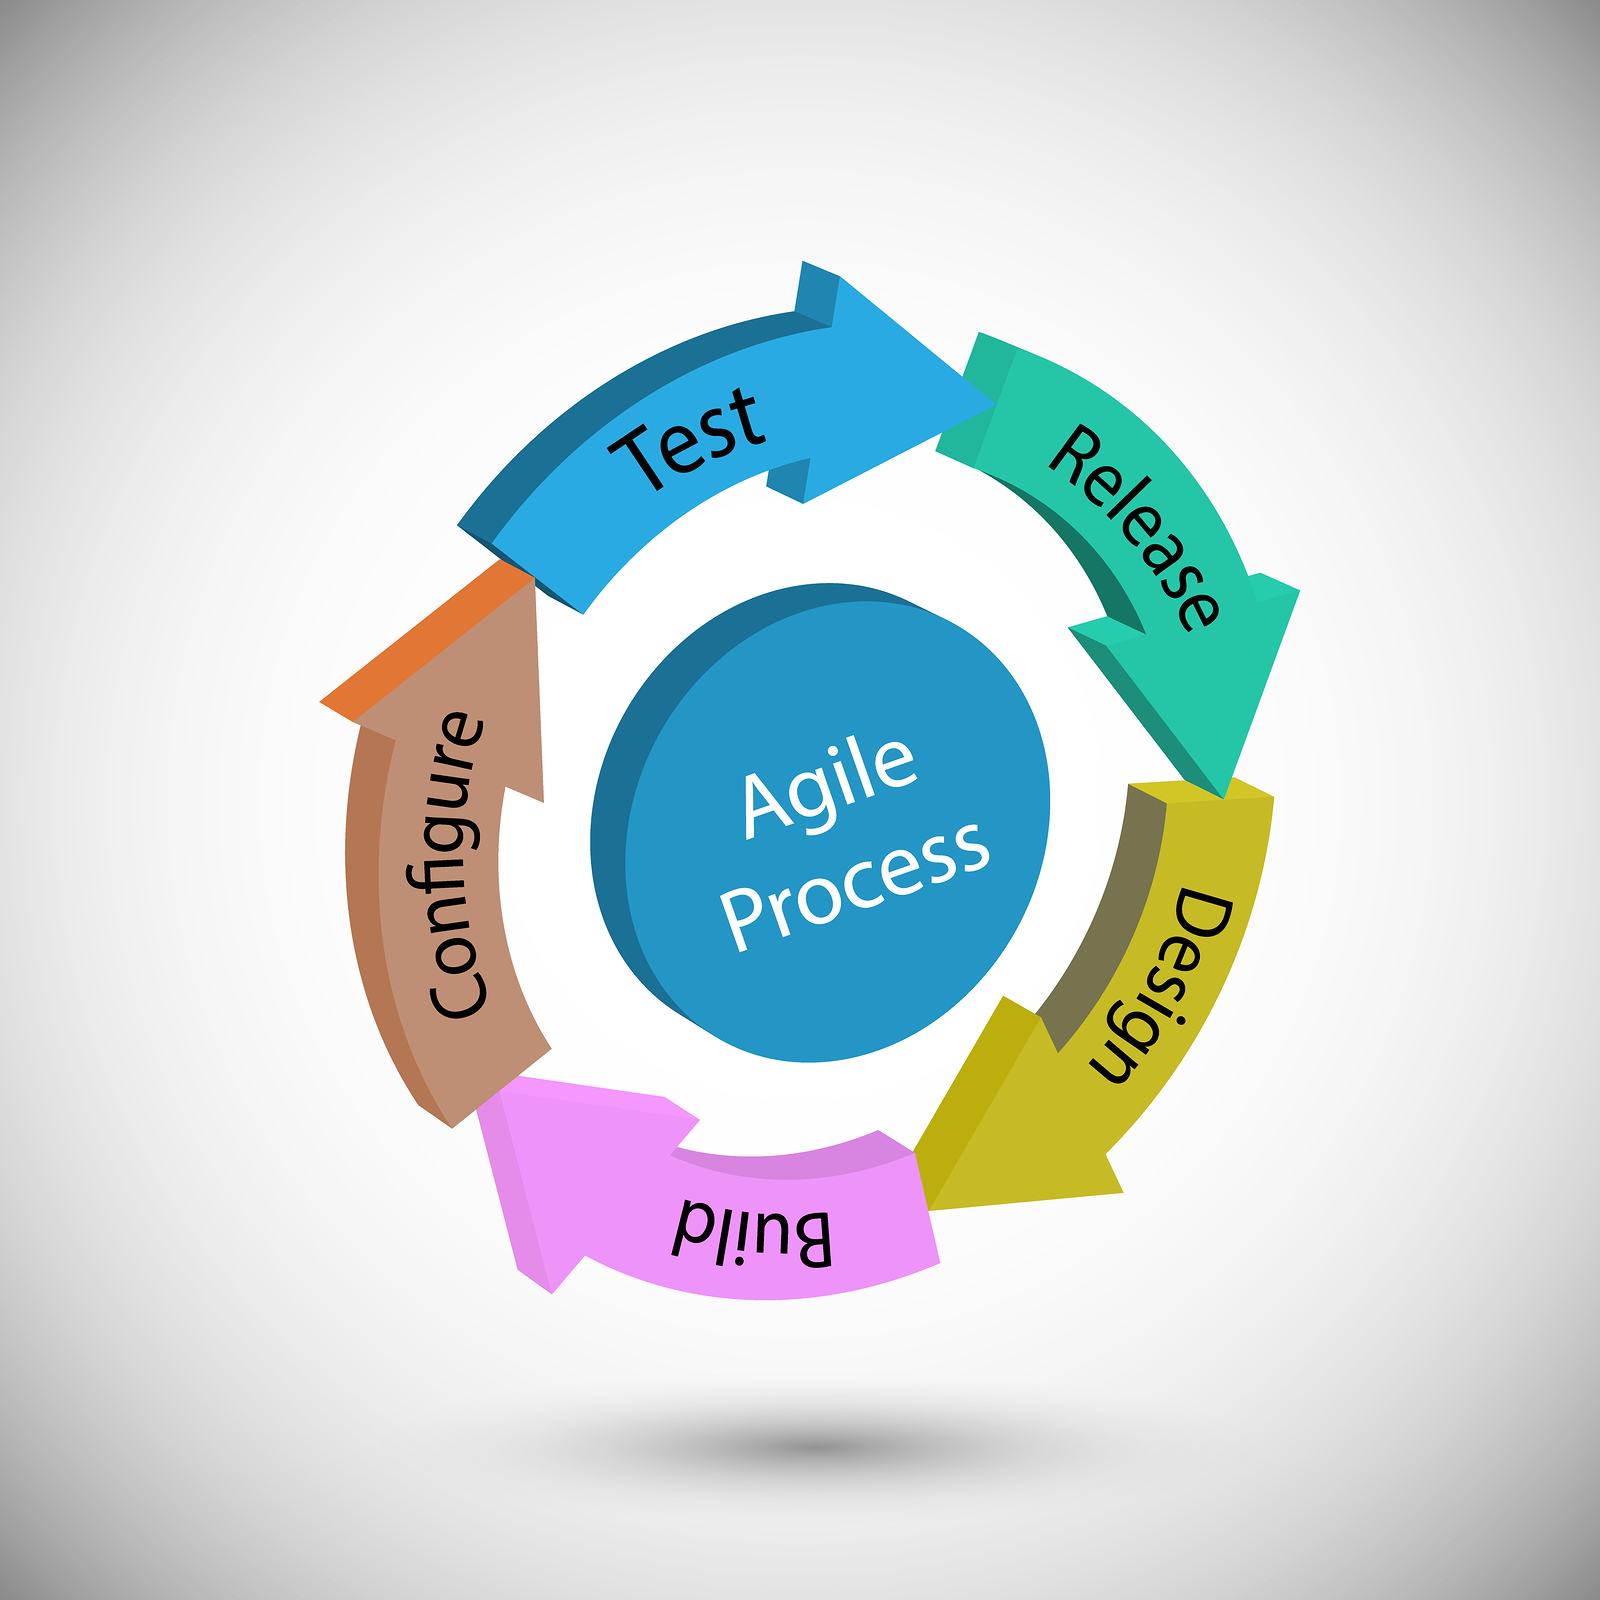 Agile processes - lopikite